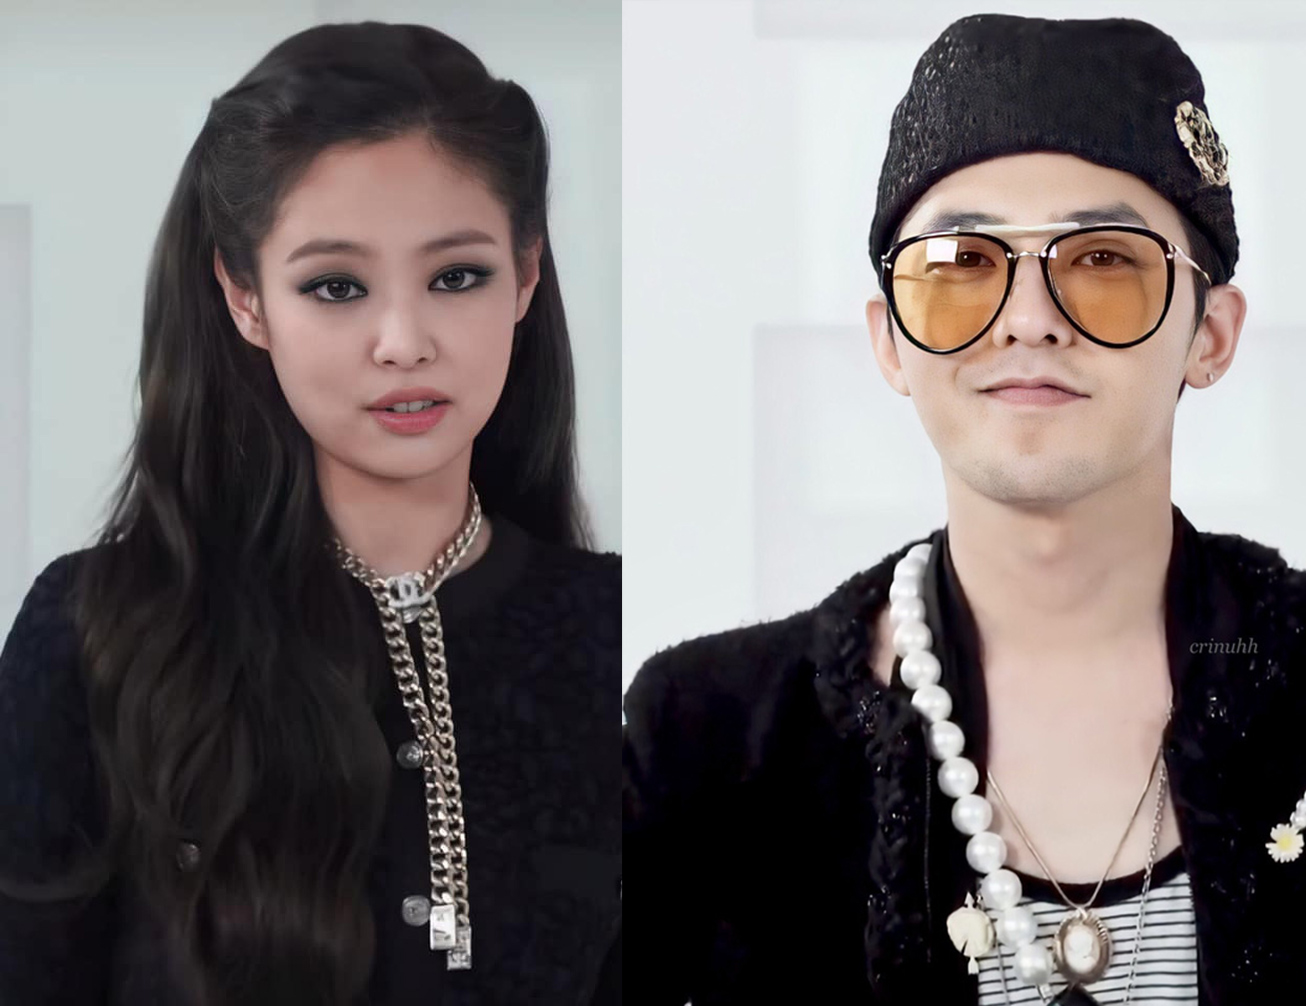 Cả G-Dragon và Jennie đều được hâm mộ bởi phong cách thời trang ấn tượng, luôn là những 'gương mặt vàng trong làng tạo trend'. Nếu tin đồn hẹn hò là thật thì quả là một cặp đôi ' trai và gái đều có cả tài lẫn sắc'.